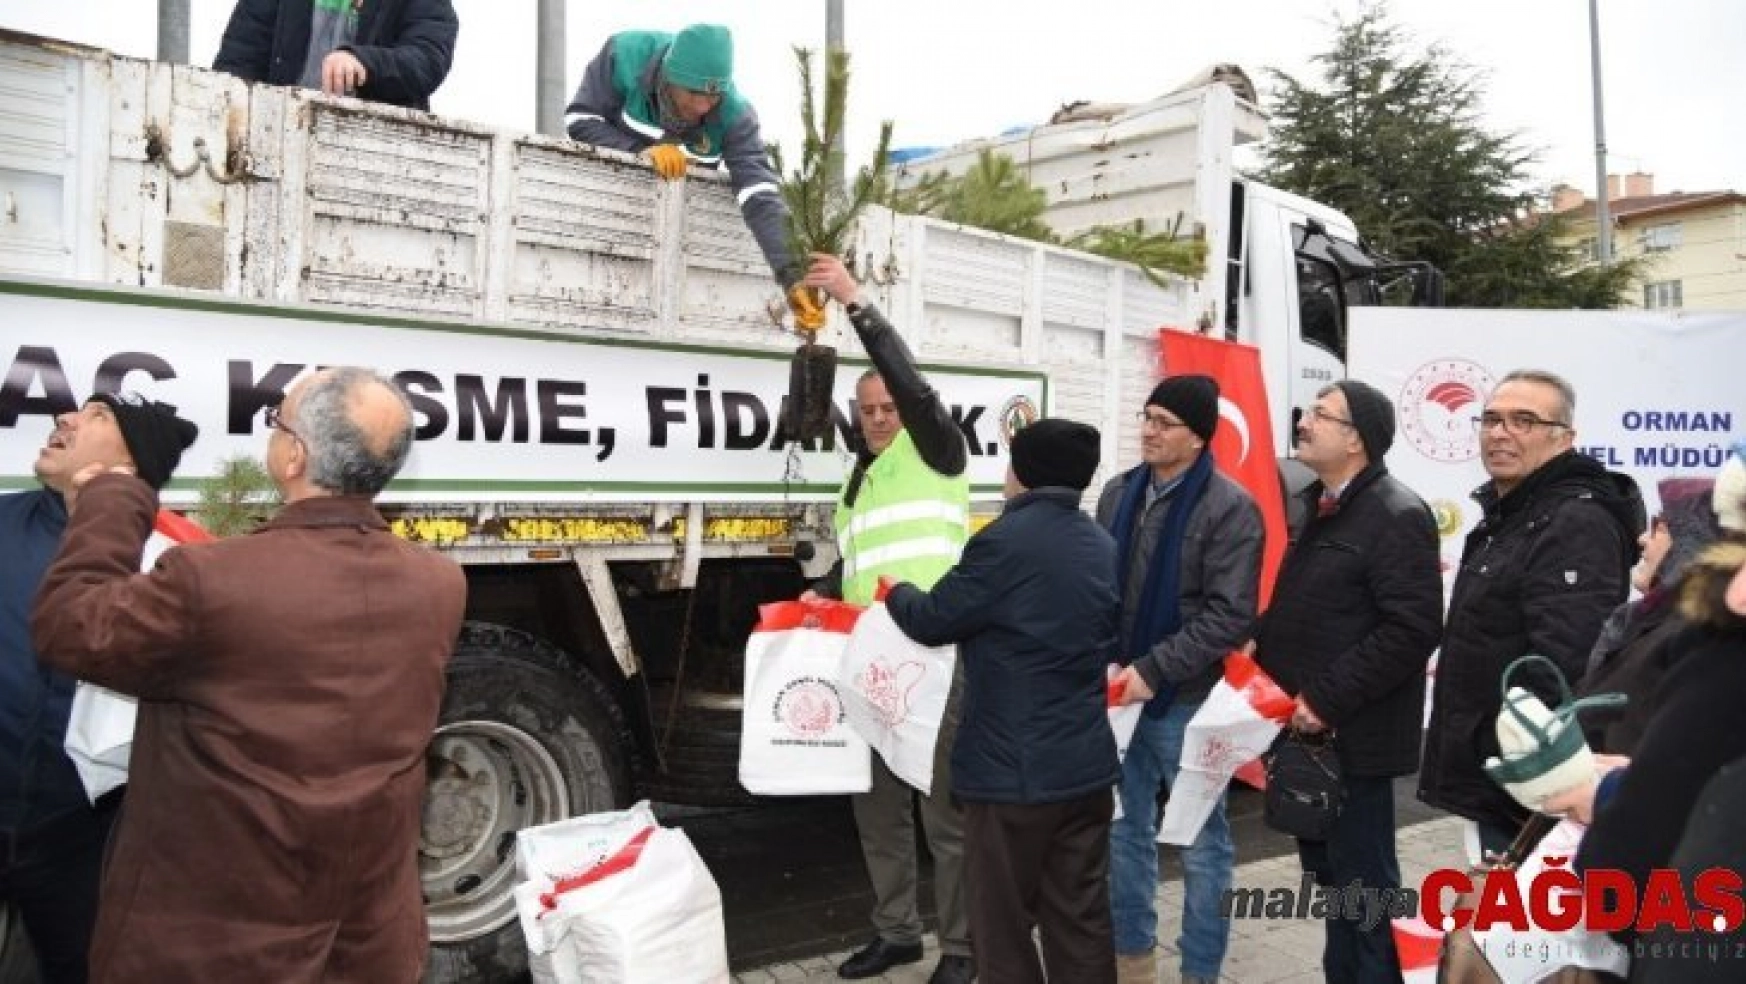 Eskişehir'de 'Yeni yıla ağaç keserek değil fidan dikerek girelim' kampanyası